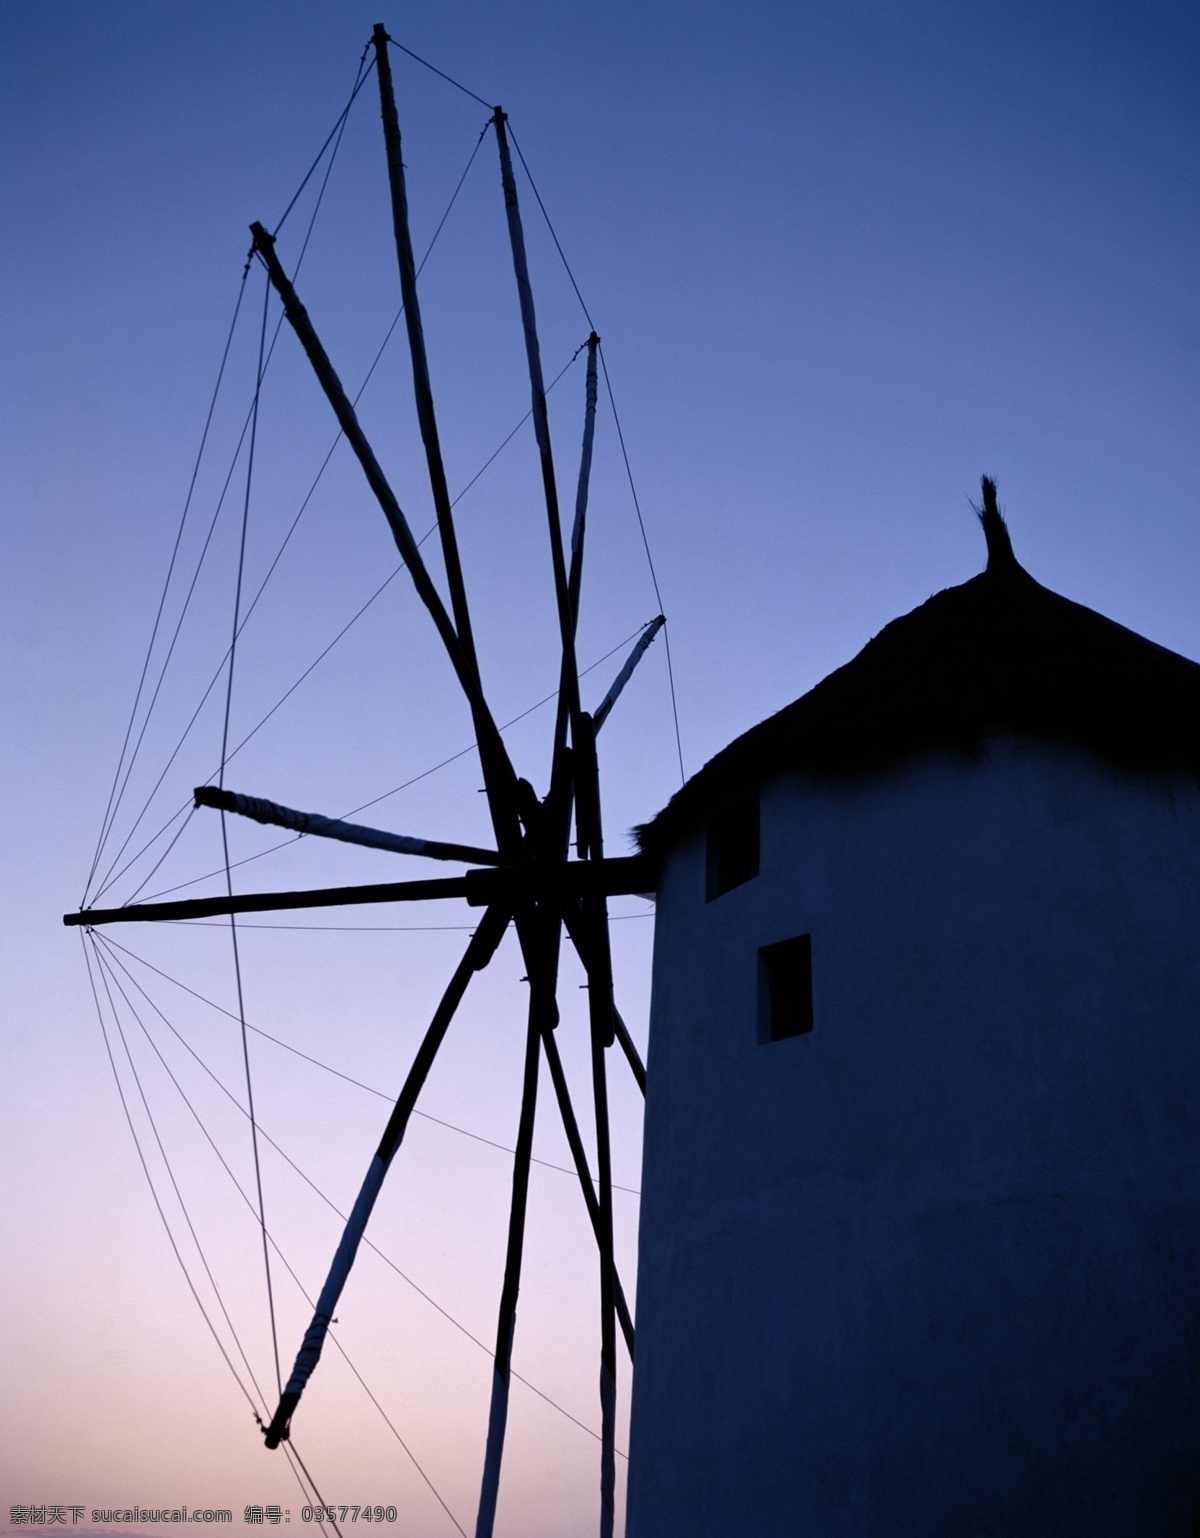 夕阳 下 荷兰 风车 剪影 国外旅游 旅游摄影 摄影图库 绯红的天空 psd源文件